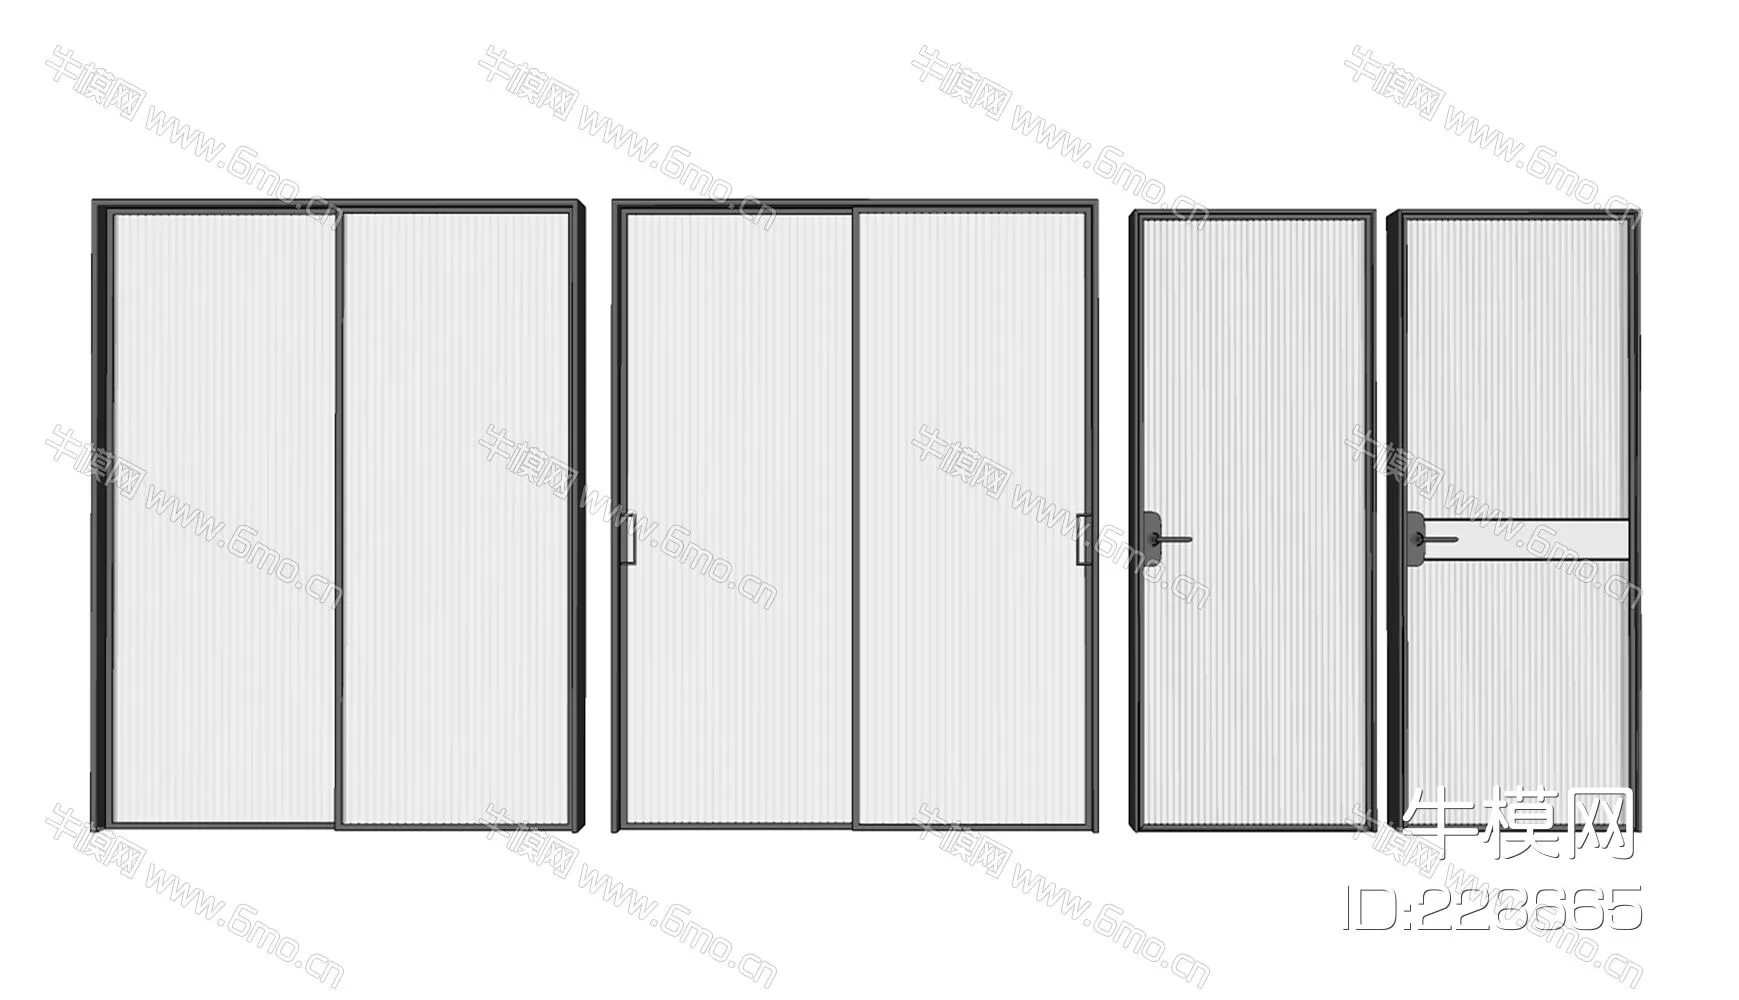 MODERN DOOR AND WINDOWS - SKETCHUP 3D MODEL - VRAY - 22866